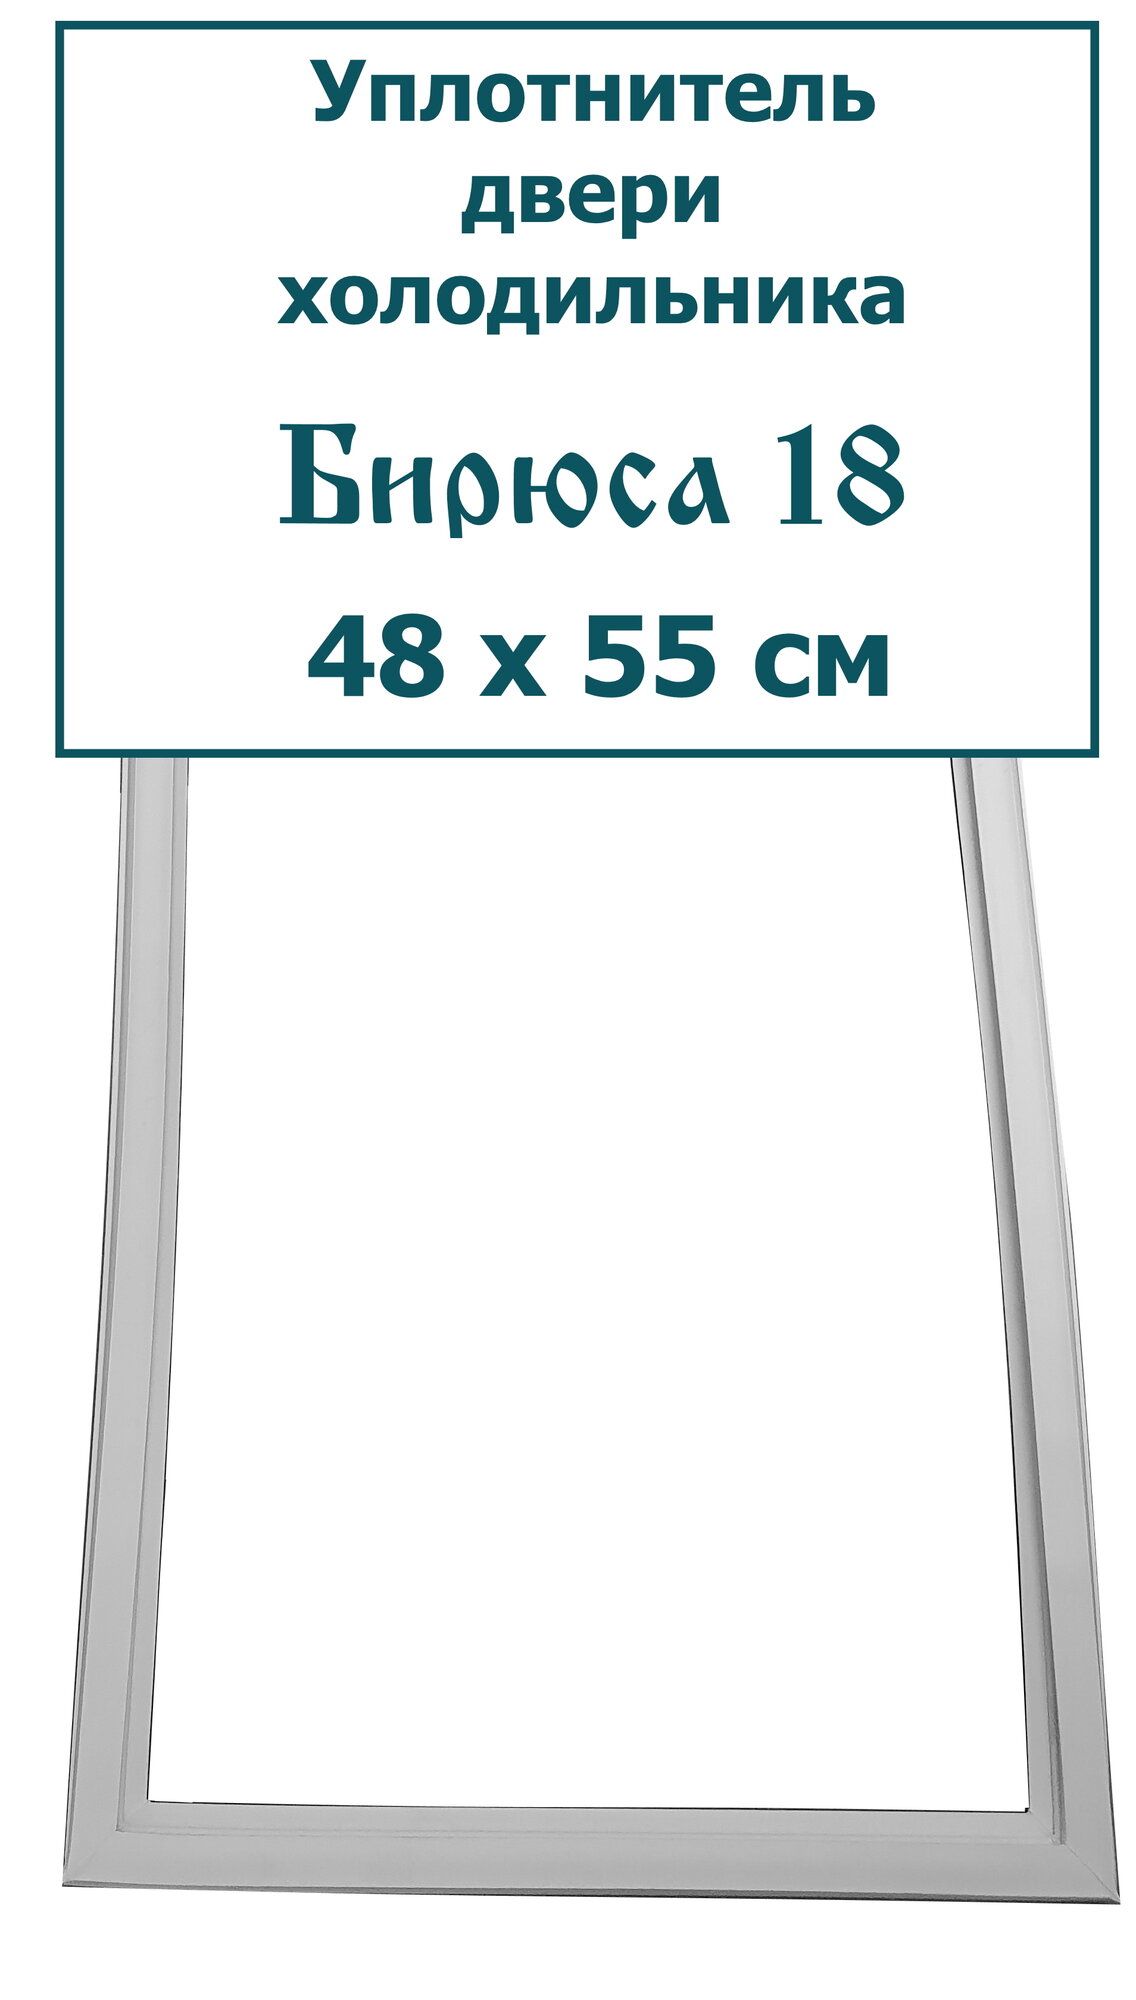 Уплотнитель двери морозильной камеры холодильника Бирюса 18 (48 x 55 см)